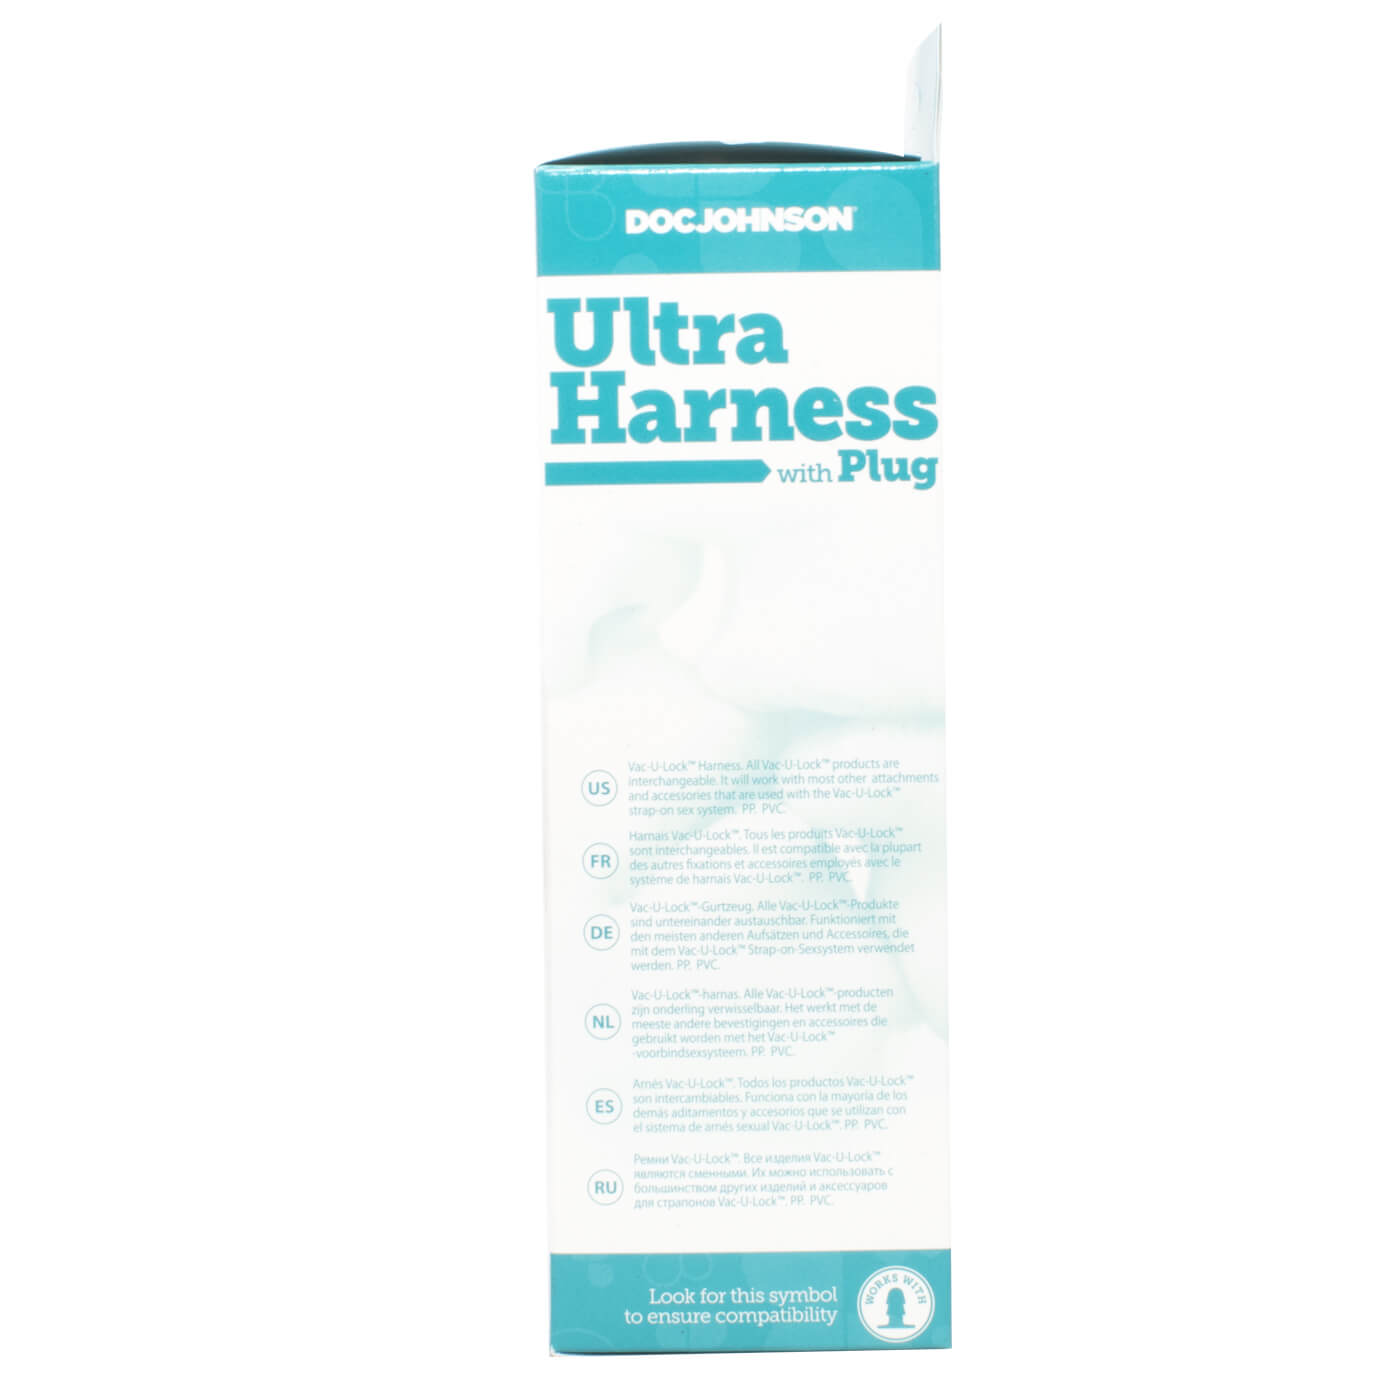 Ultra Harness & Vac-U-Lock Plug